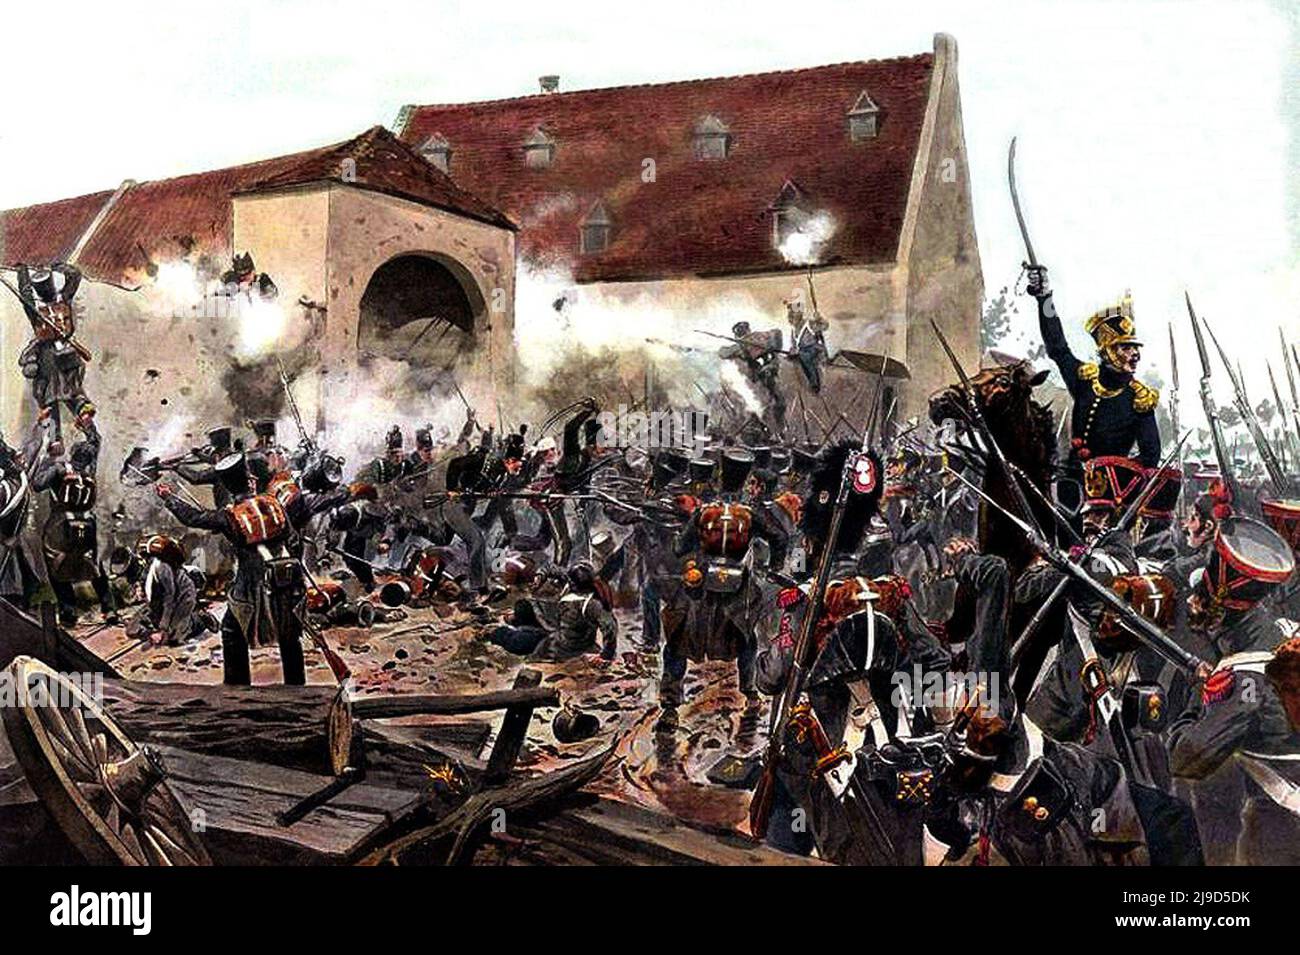 La tempête de la Haye Sainte a la bataille de Waterloo en 1815. La photo montre les français qui ont attaqué la ferme. Peinture de l'artiste Richard Knotel, image du domaine public en vertu de l'âge. Banque D'Images